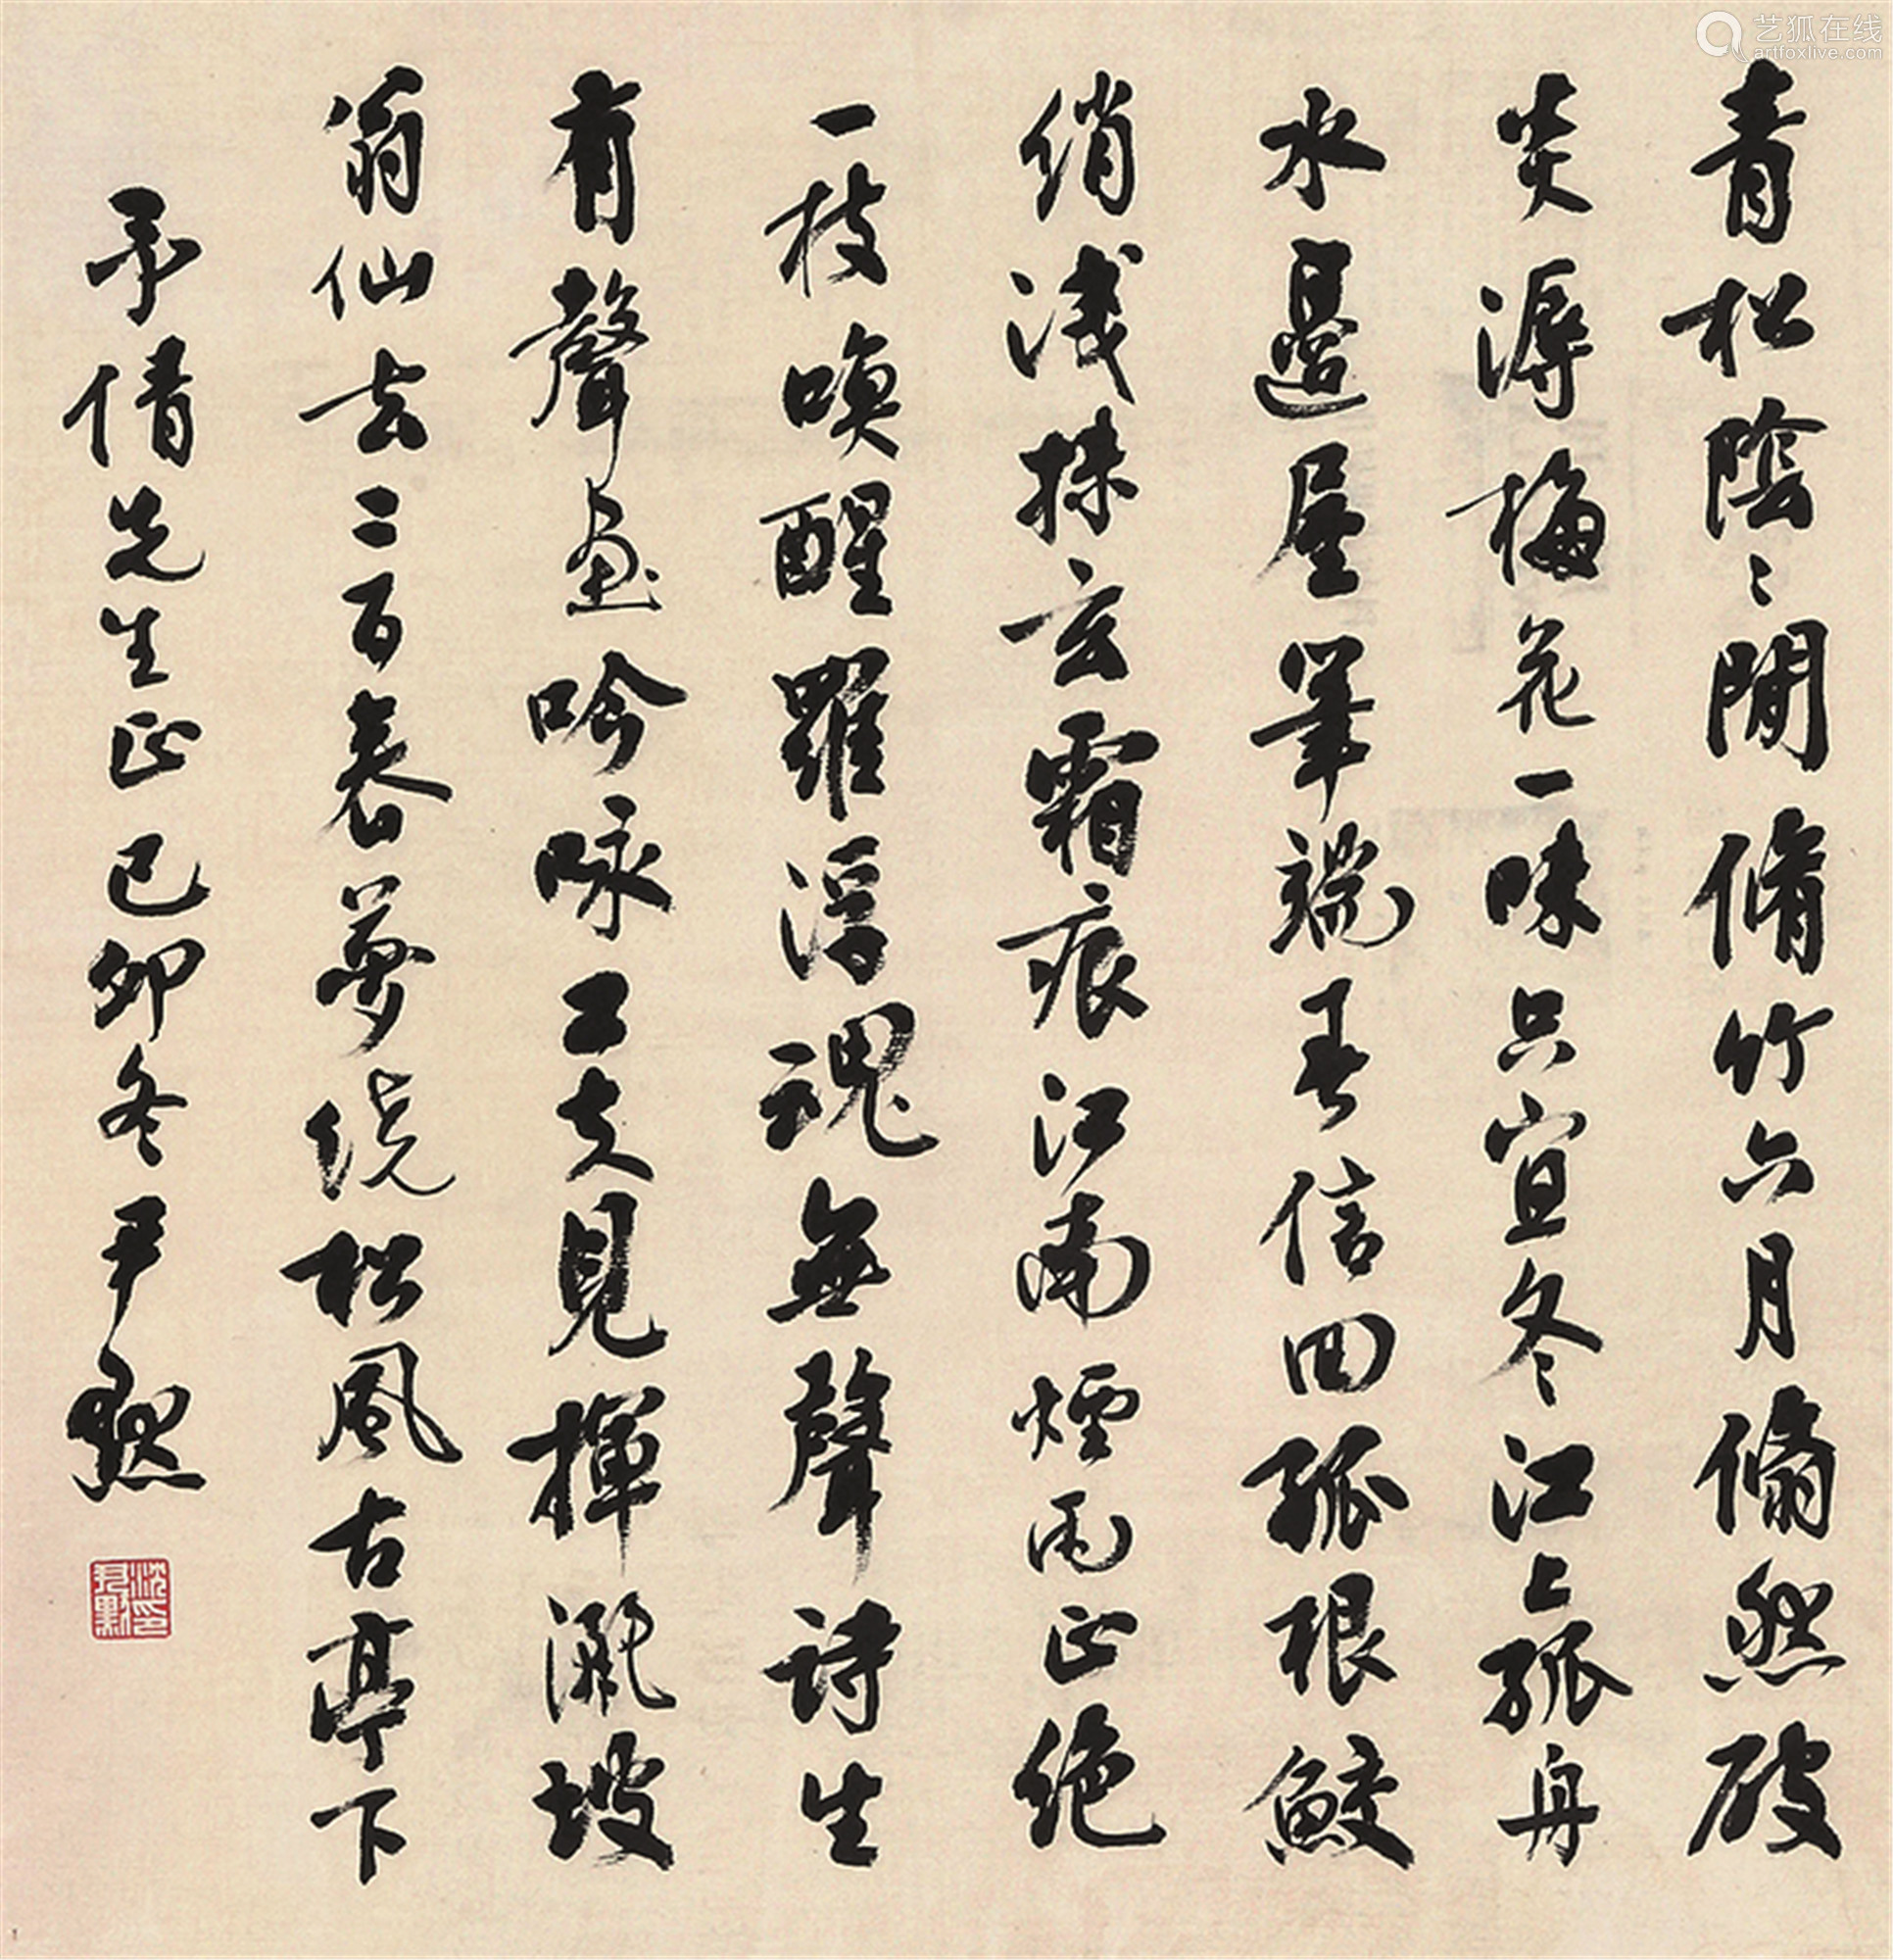 尺寸47×44cm拍品描述|简介:沈尹默(1883～1971,原名君默,浙江吴兴人